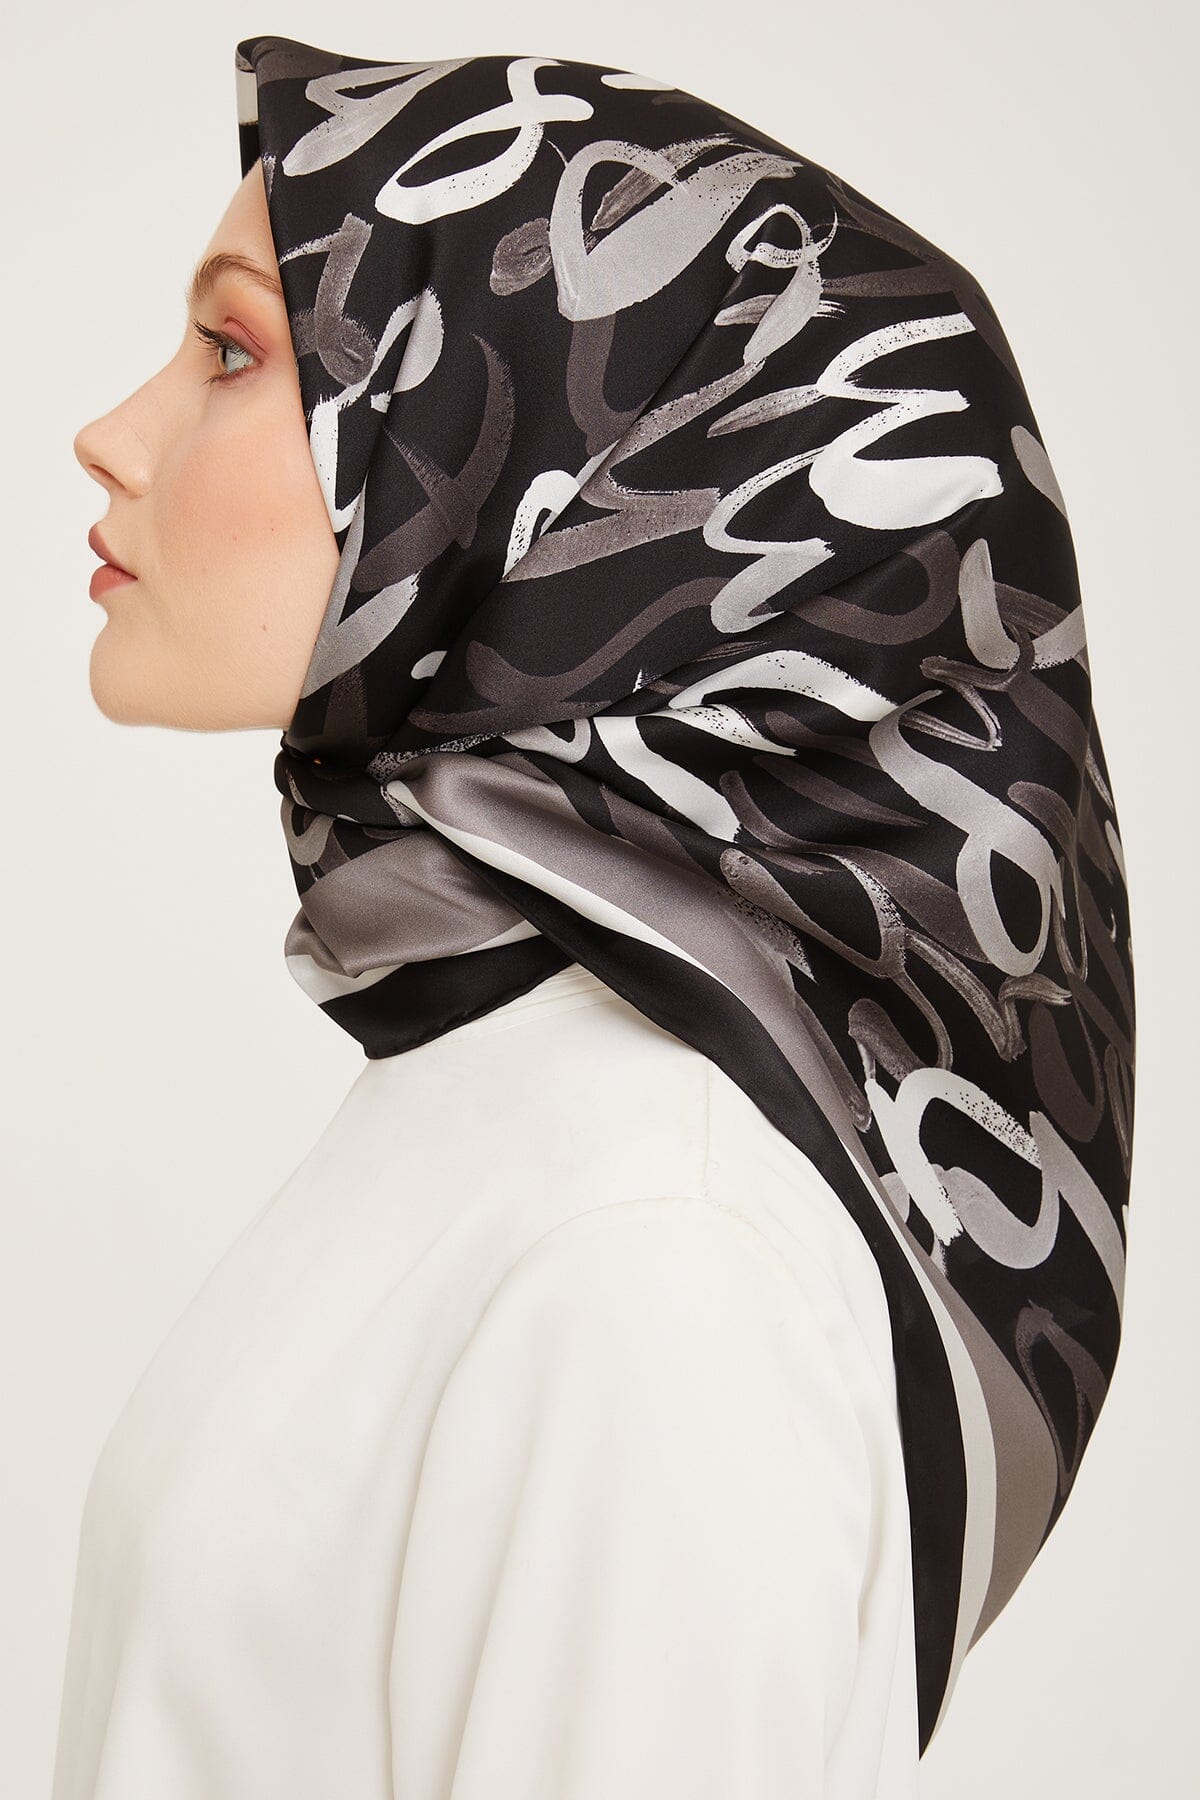 Armine Nudle Designer Silk Scarf #36 Silk Hijabs,Armine Armine 